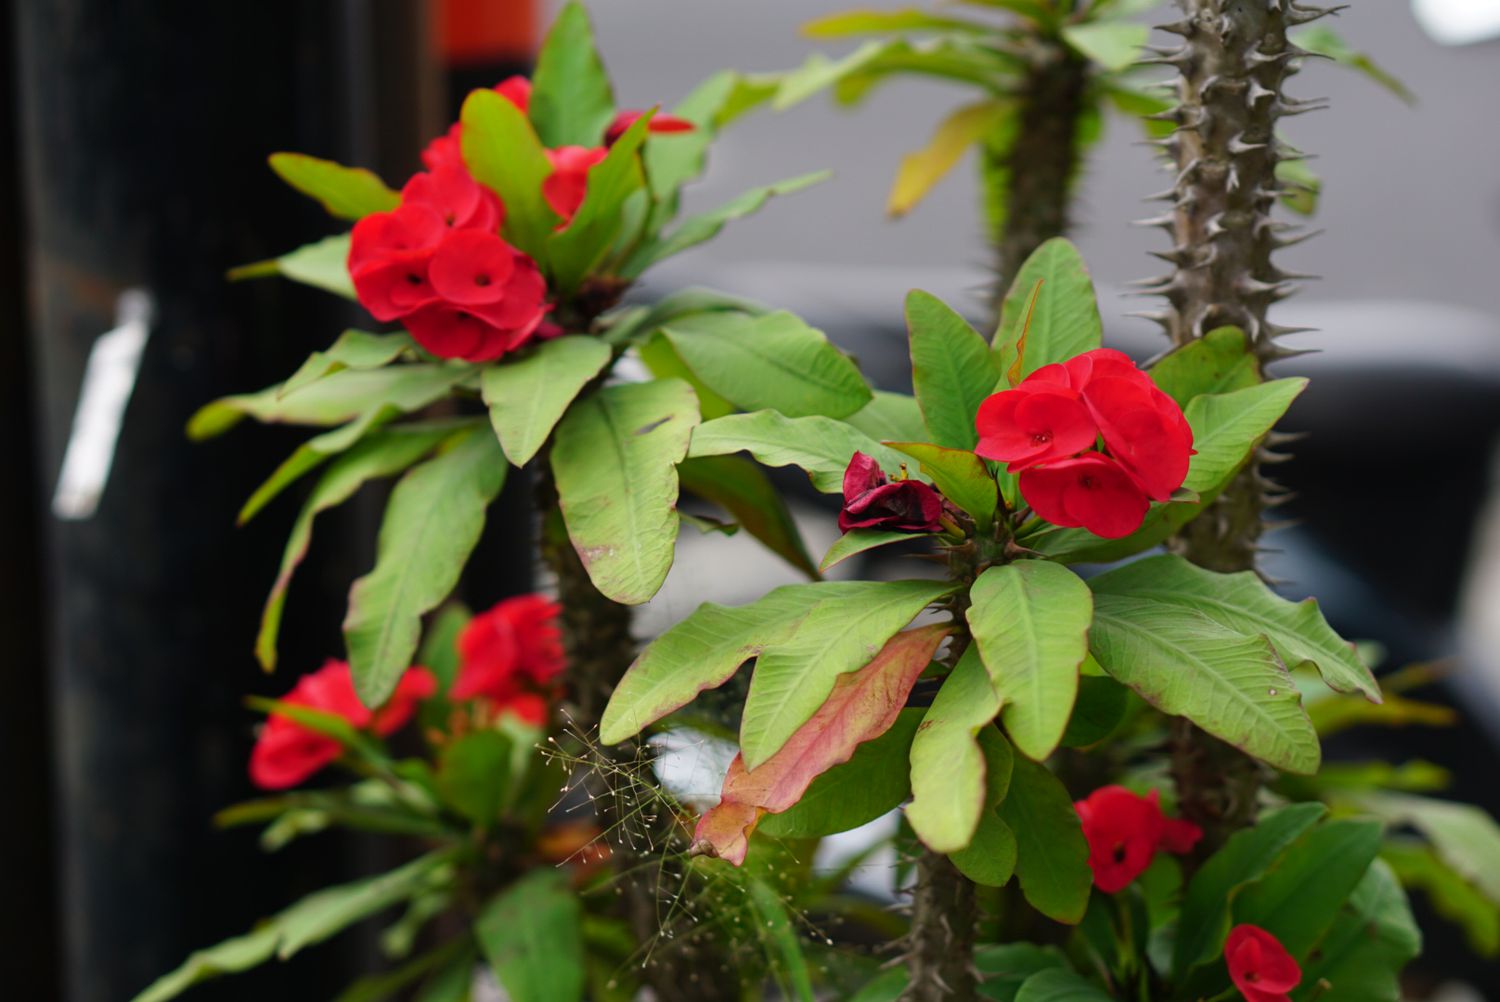 Dornenkrone mit Dornen am Stiel und roten Blüten